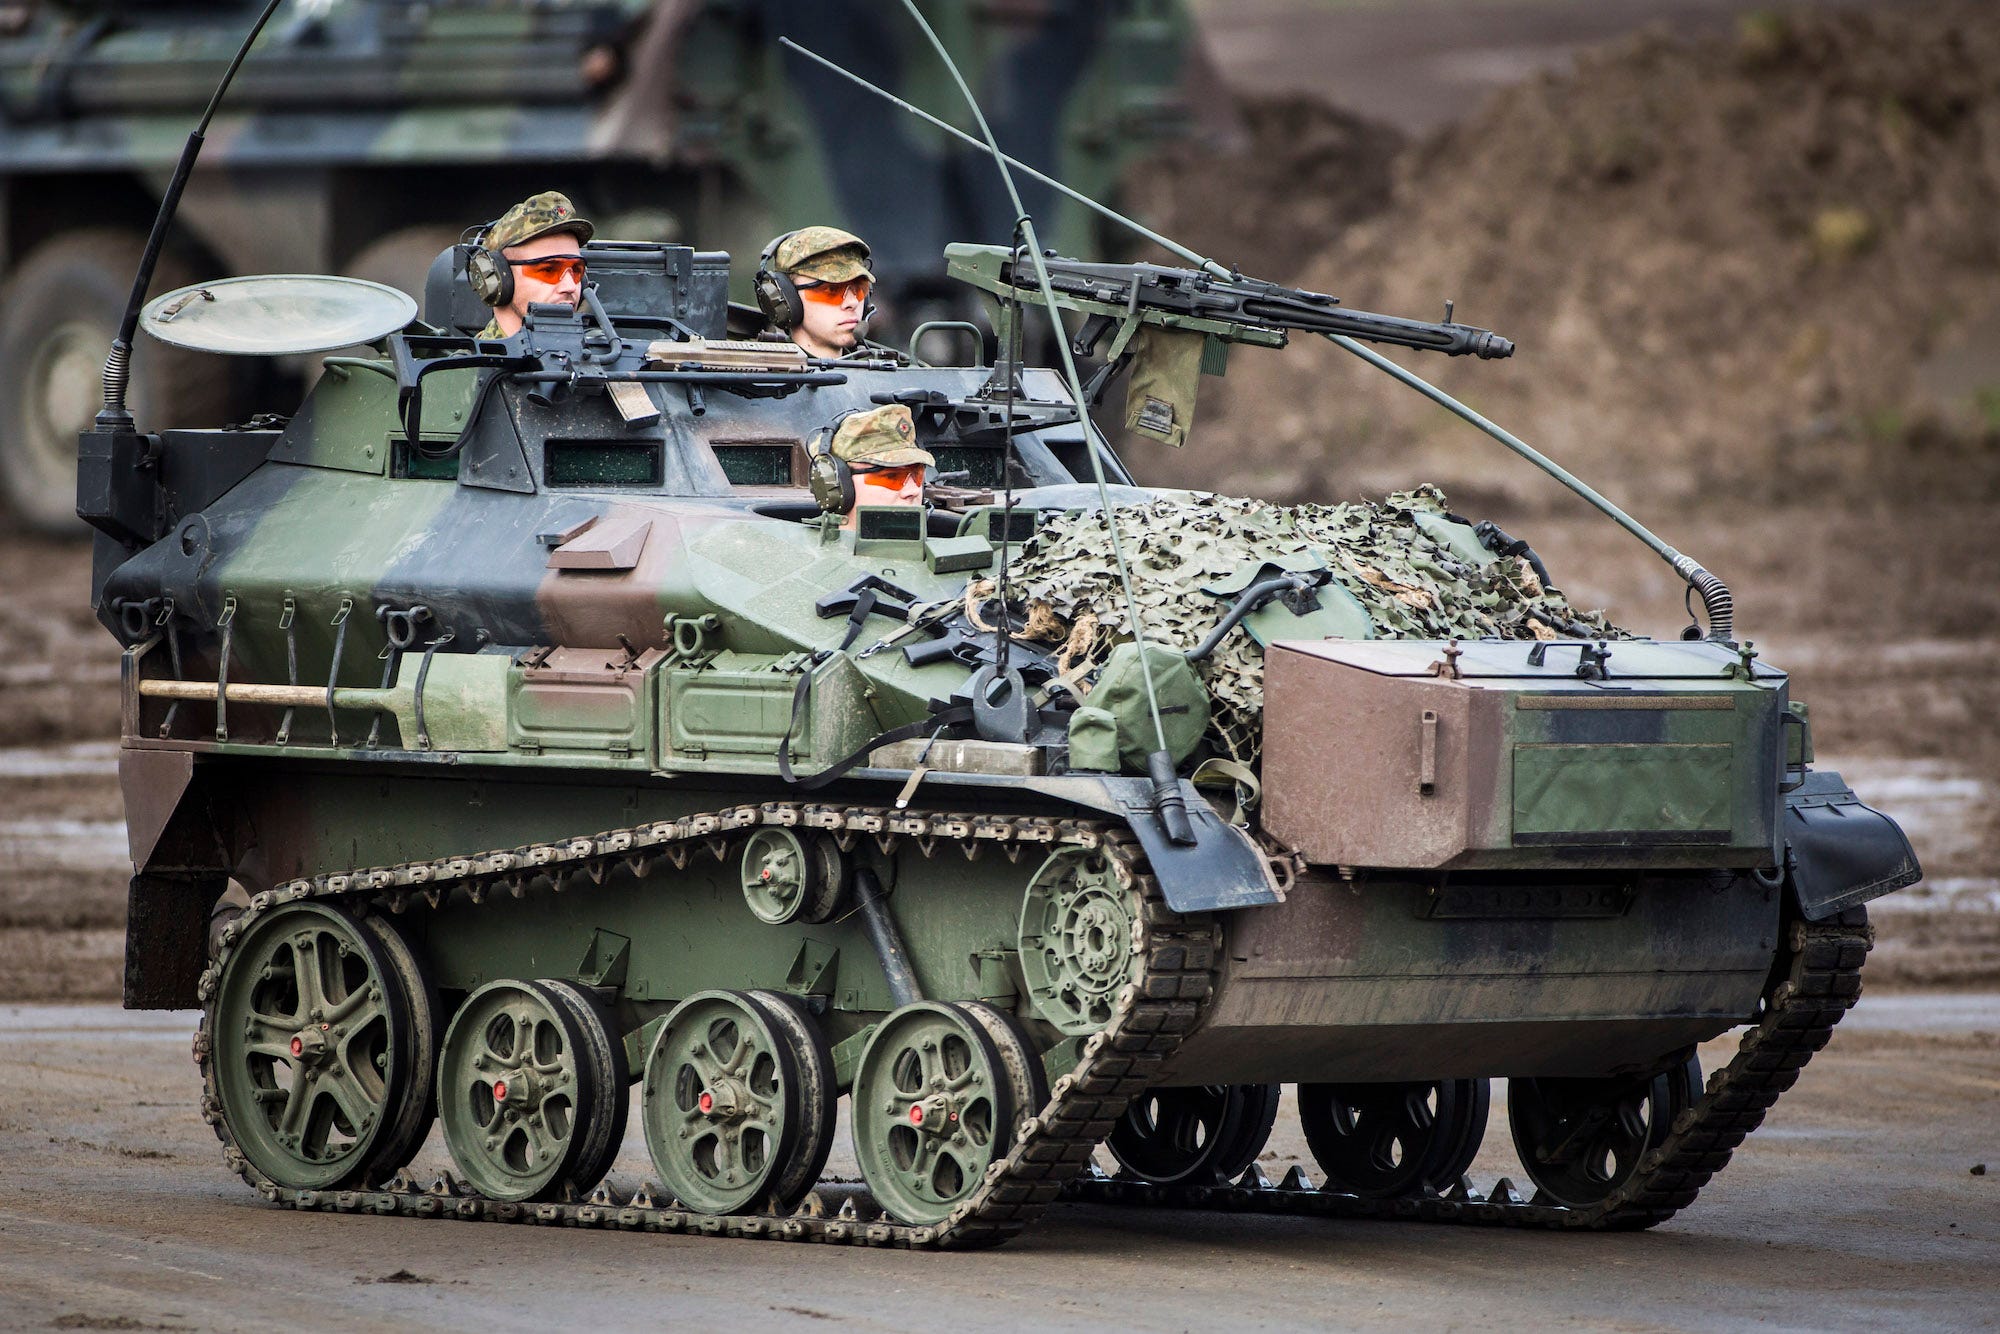 German Bundeswehr soldiers in Wiesel 1 MK light armored vehicle